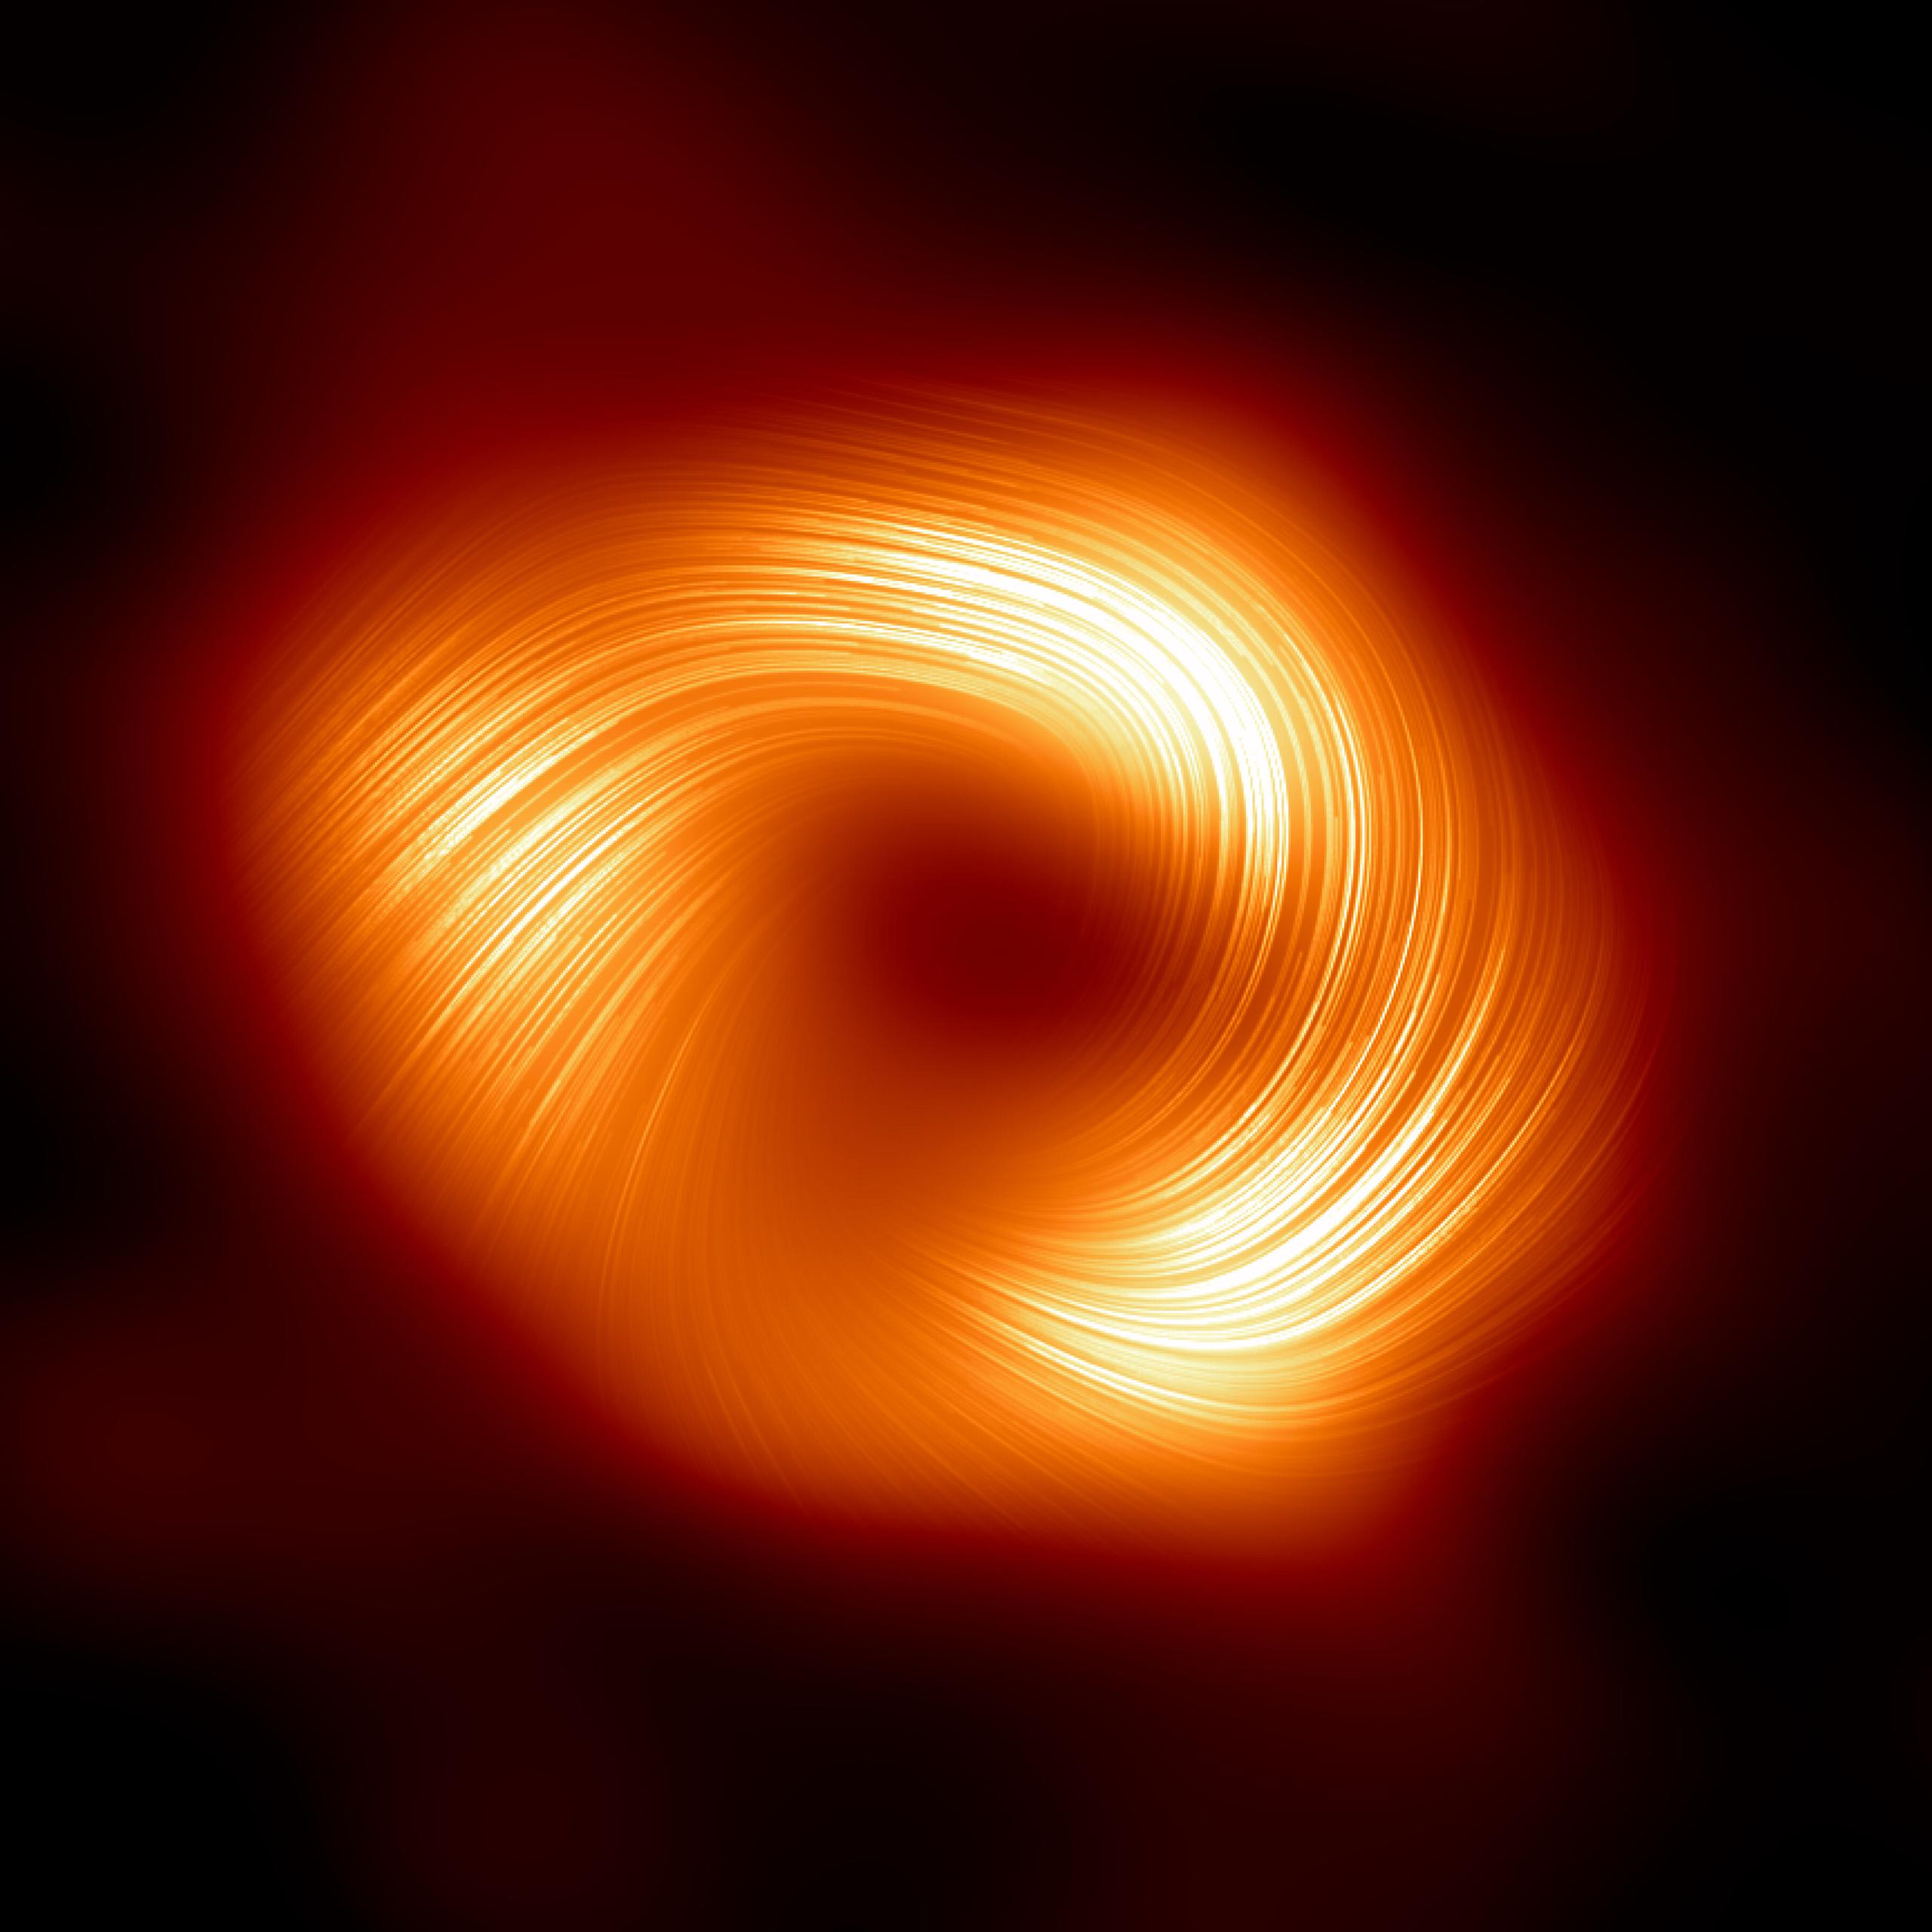 Una vista del agujero negro supermasivo de la Vía Láctea Sagitario A* en luz polarizada. Crédito: EHT Collaboration. Imagen facilitada por el ESO.
